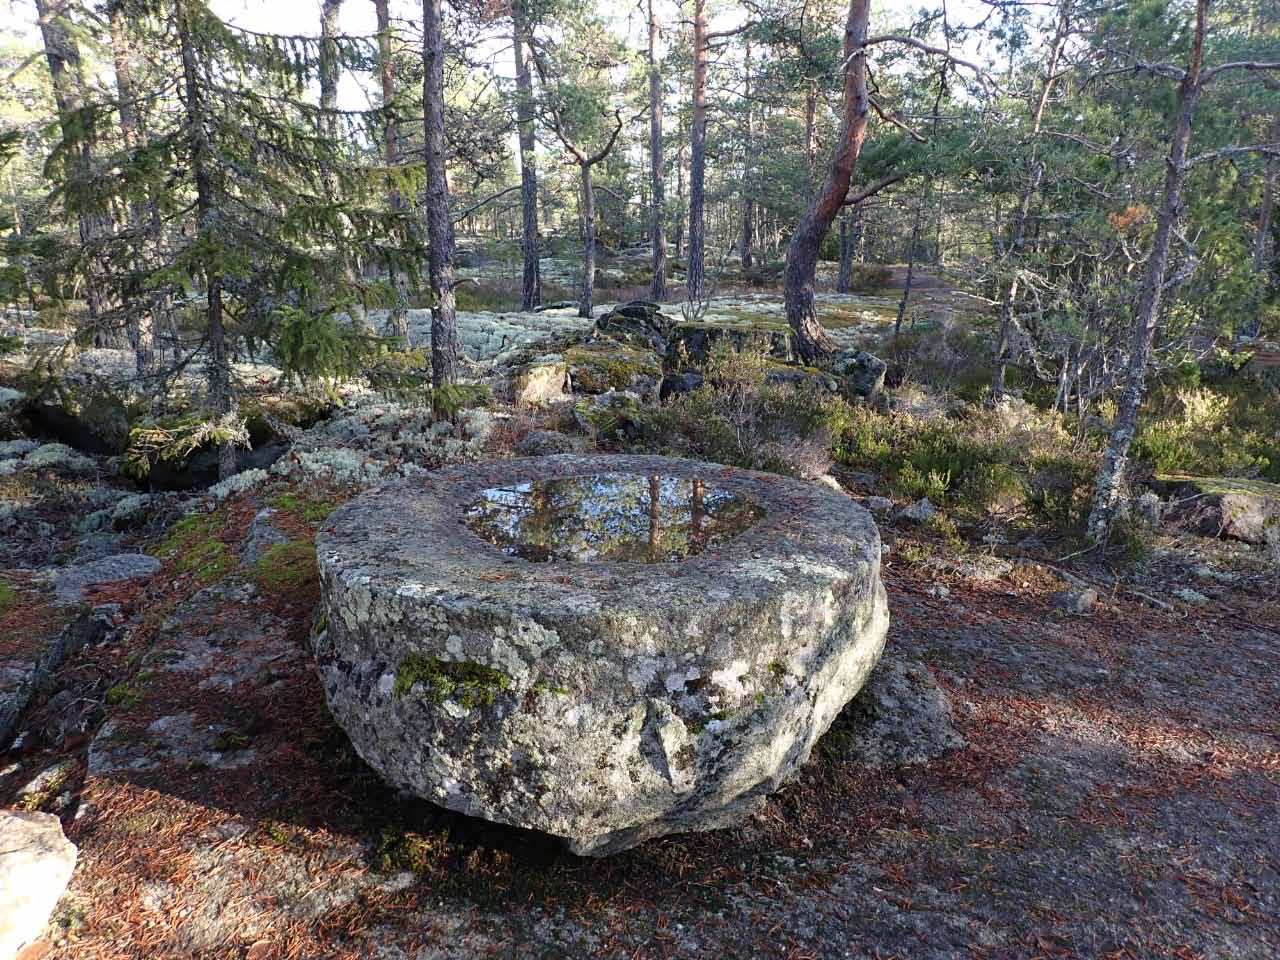 Kuva: Puolivalmis myllynkivi kalliolla louhoksen reunalla. Lahden museot / Päijät-Hämeen alueellinen vastuumuseo. CC BY 4.0 Esko Tikkala 7.11.2020